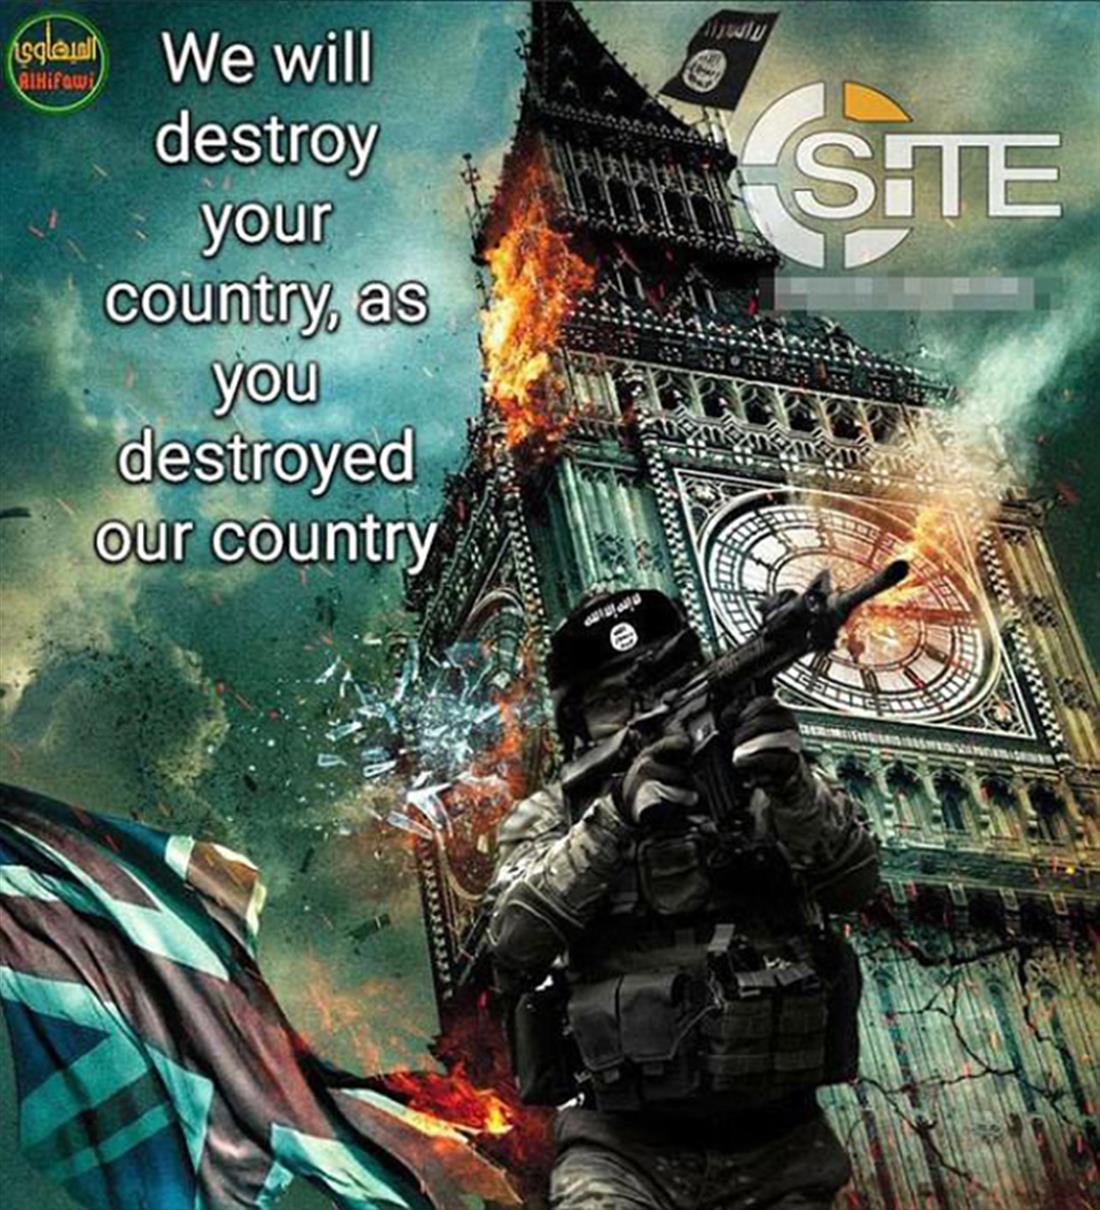 Τζιχαντιστές - ISIS - αφίσες - τρομοκρατία - Ευρώπη